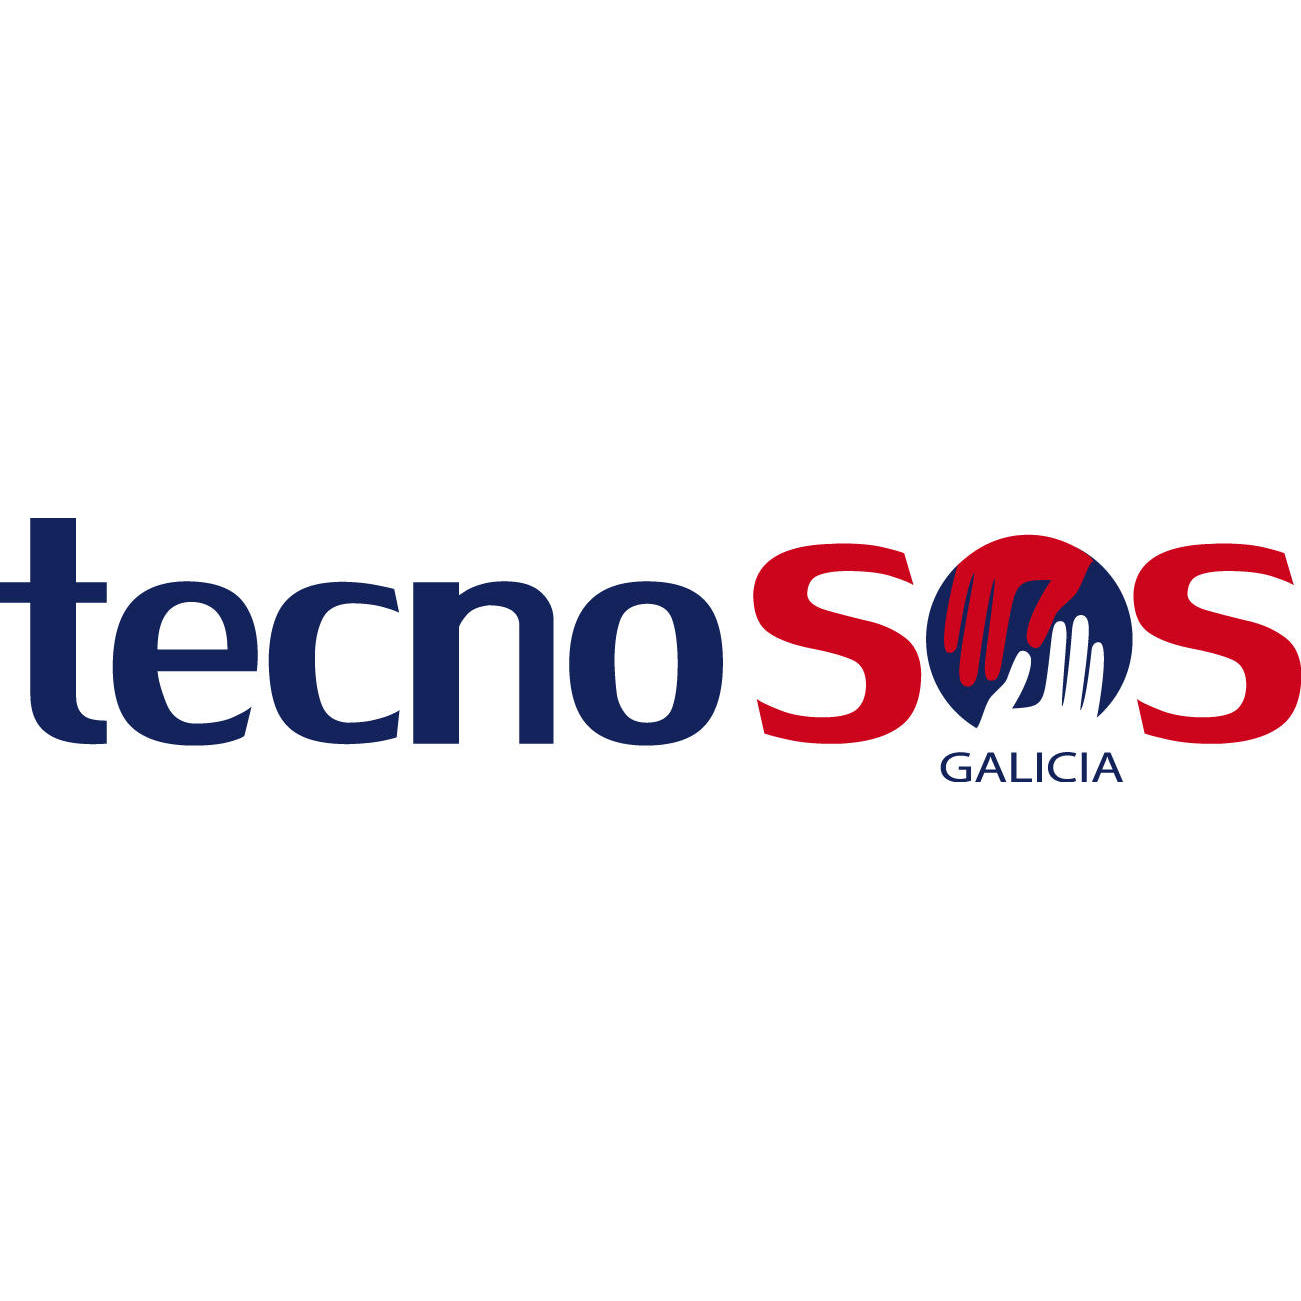 Tecnosos Galicia Logo